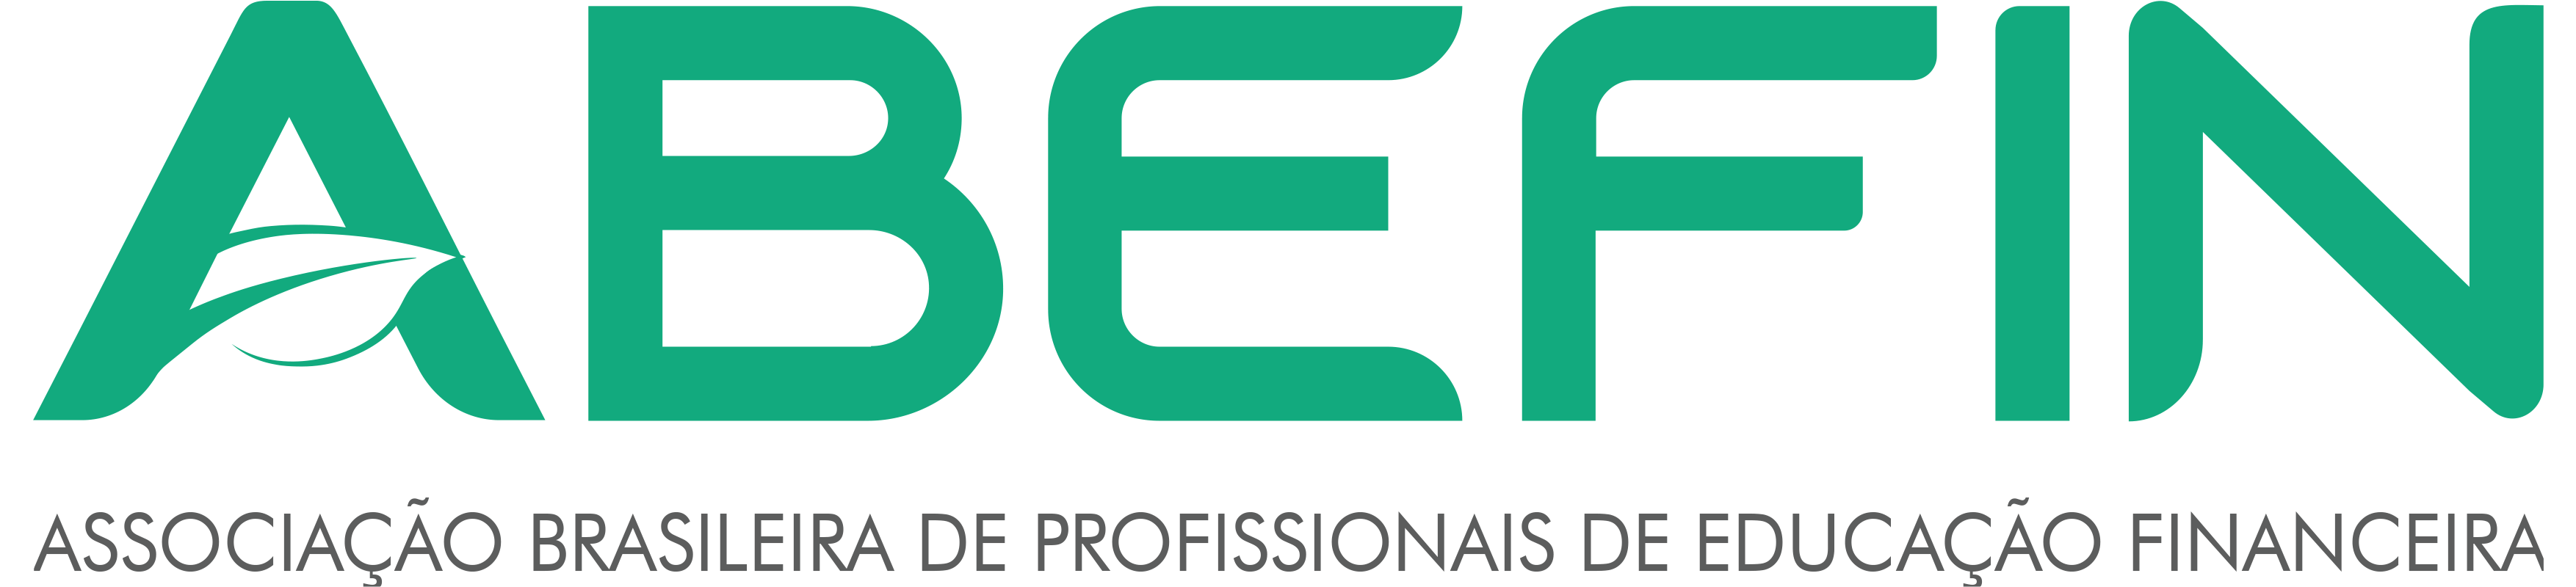 Logo abefin